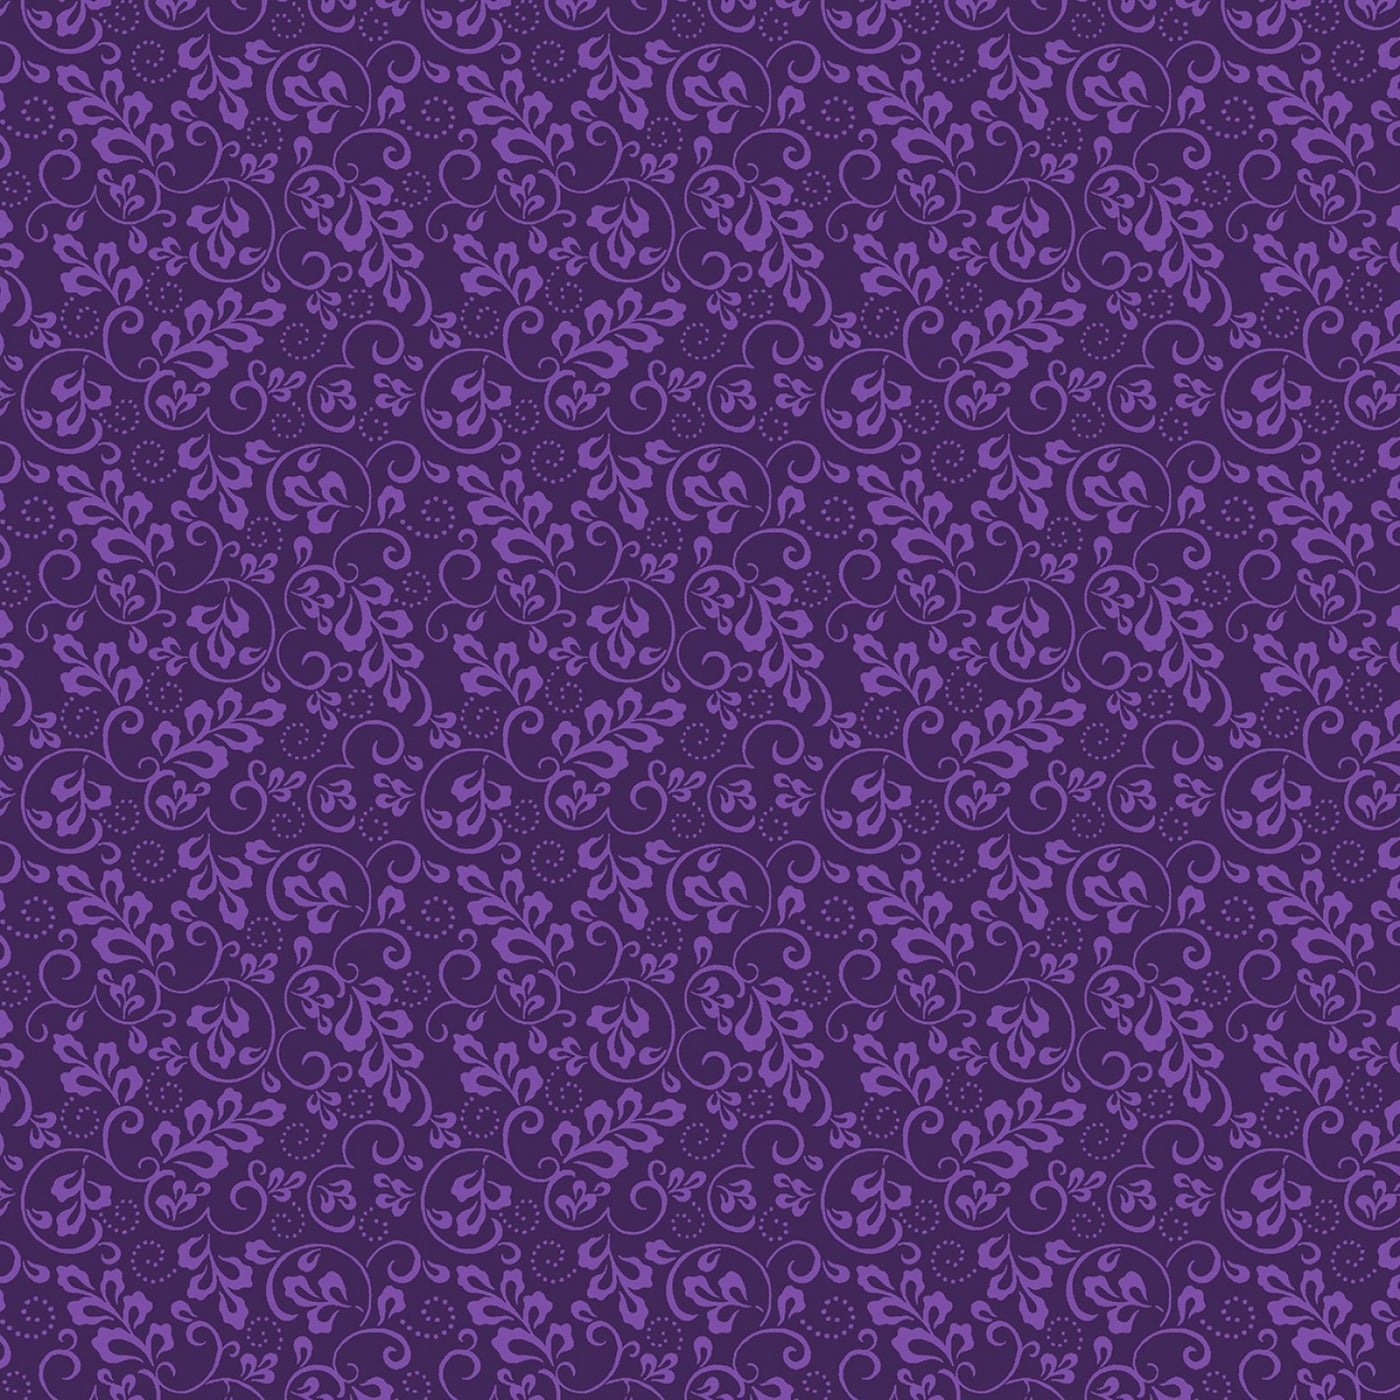 Essential Basics Leaf and Scroll 669 Darkest Purple (6561202372773)